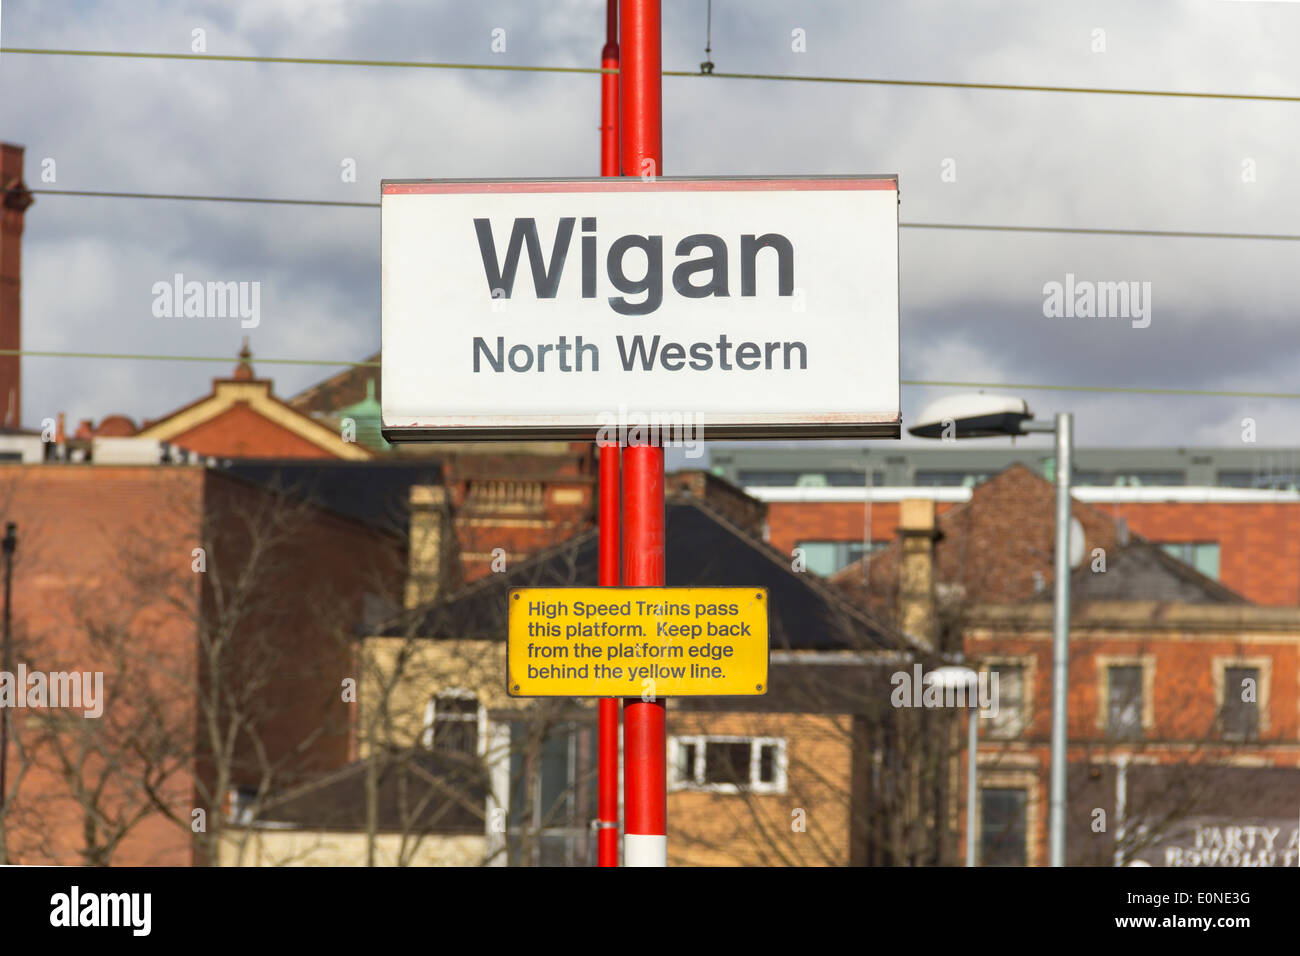 Wigan North Western West Coast Main Line stazione ferroviaria, segno e attenzione a tenere indietro dal bordo della piattaforma. Foto Stock